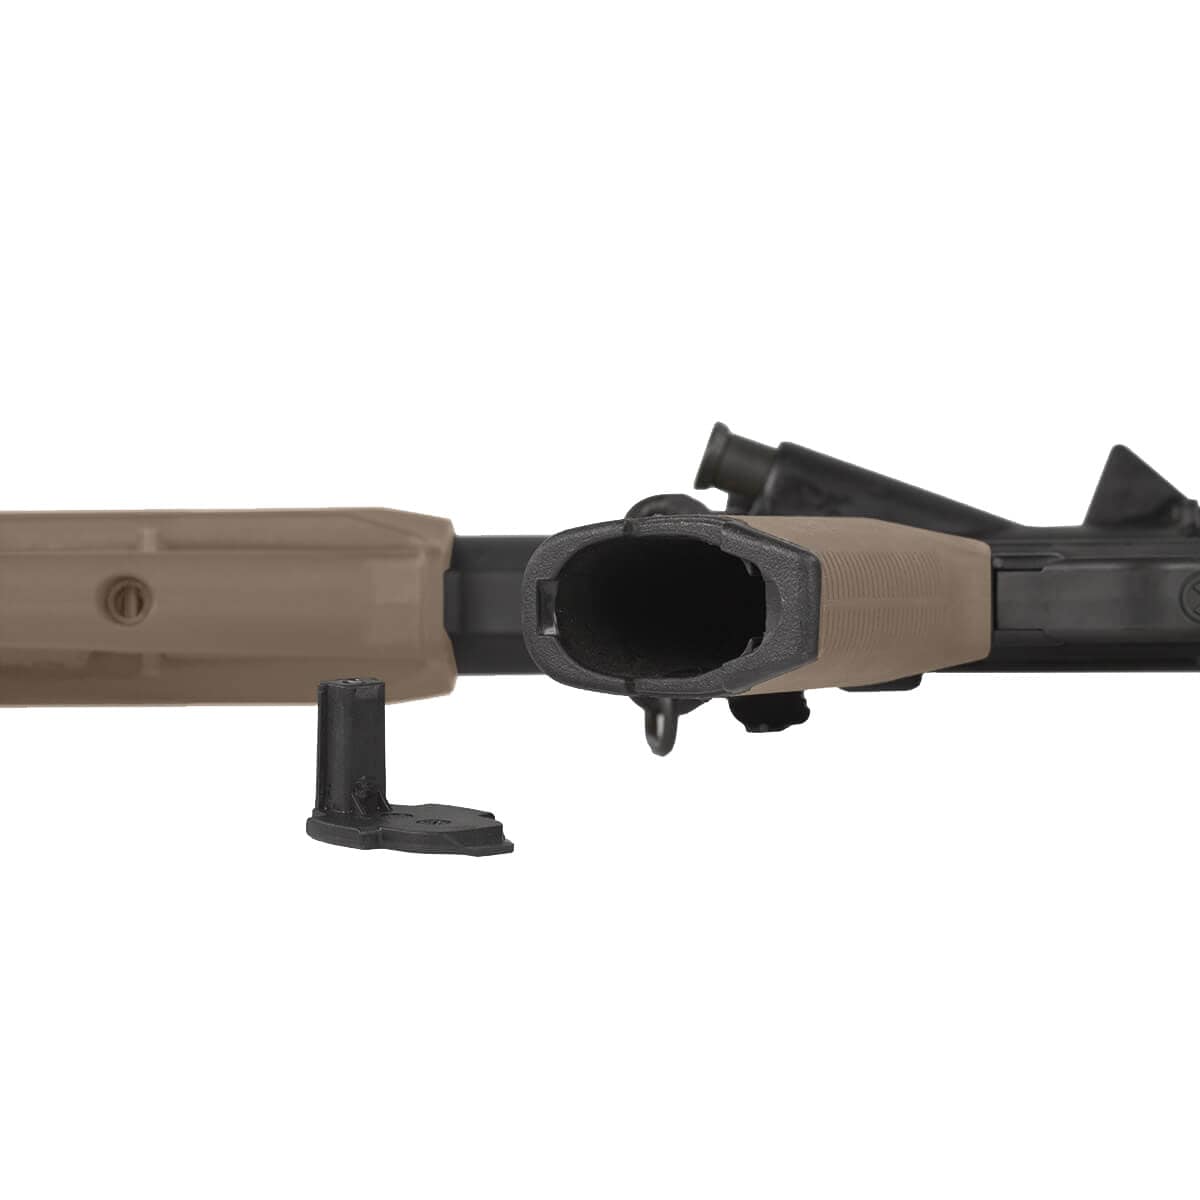 Chwyt pistoletowy Magpul MOE+ Grip do karabinków AR15/M4 - Flat Dark Earth